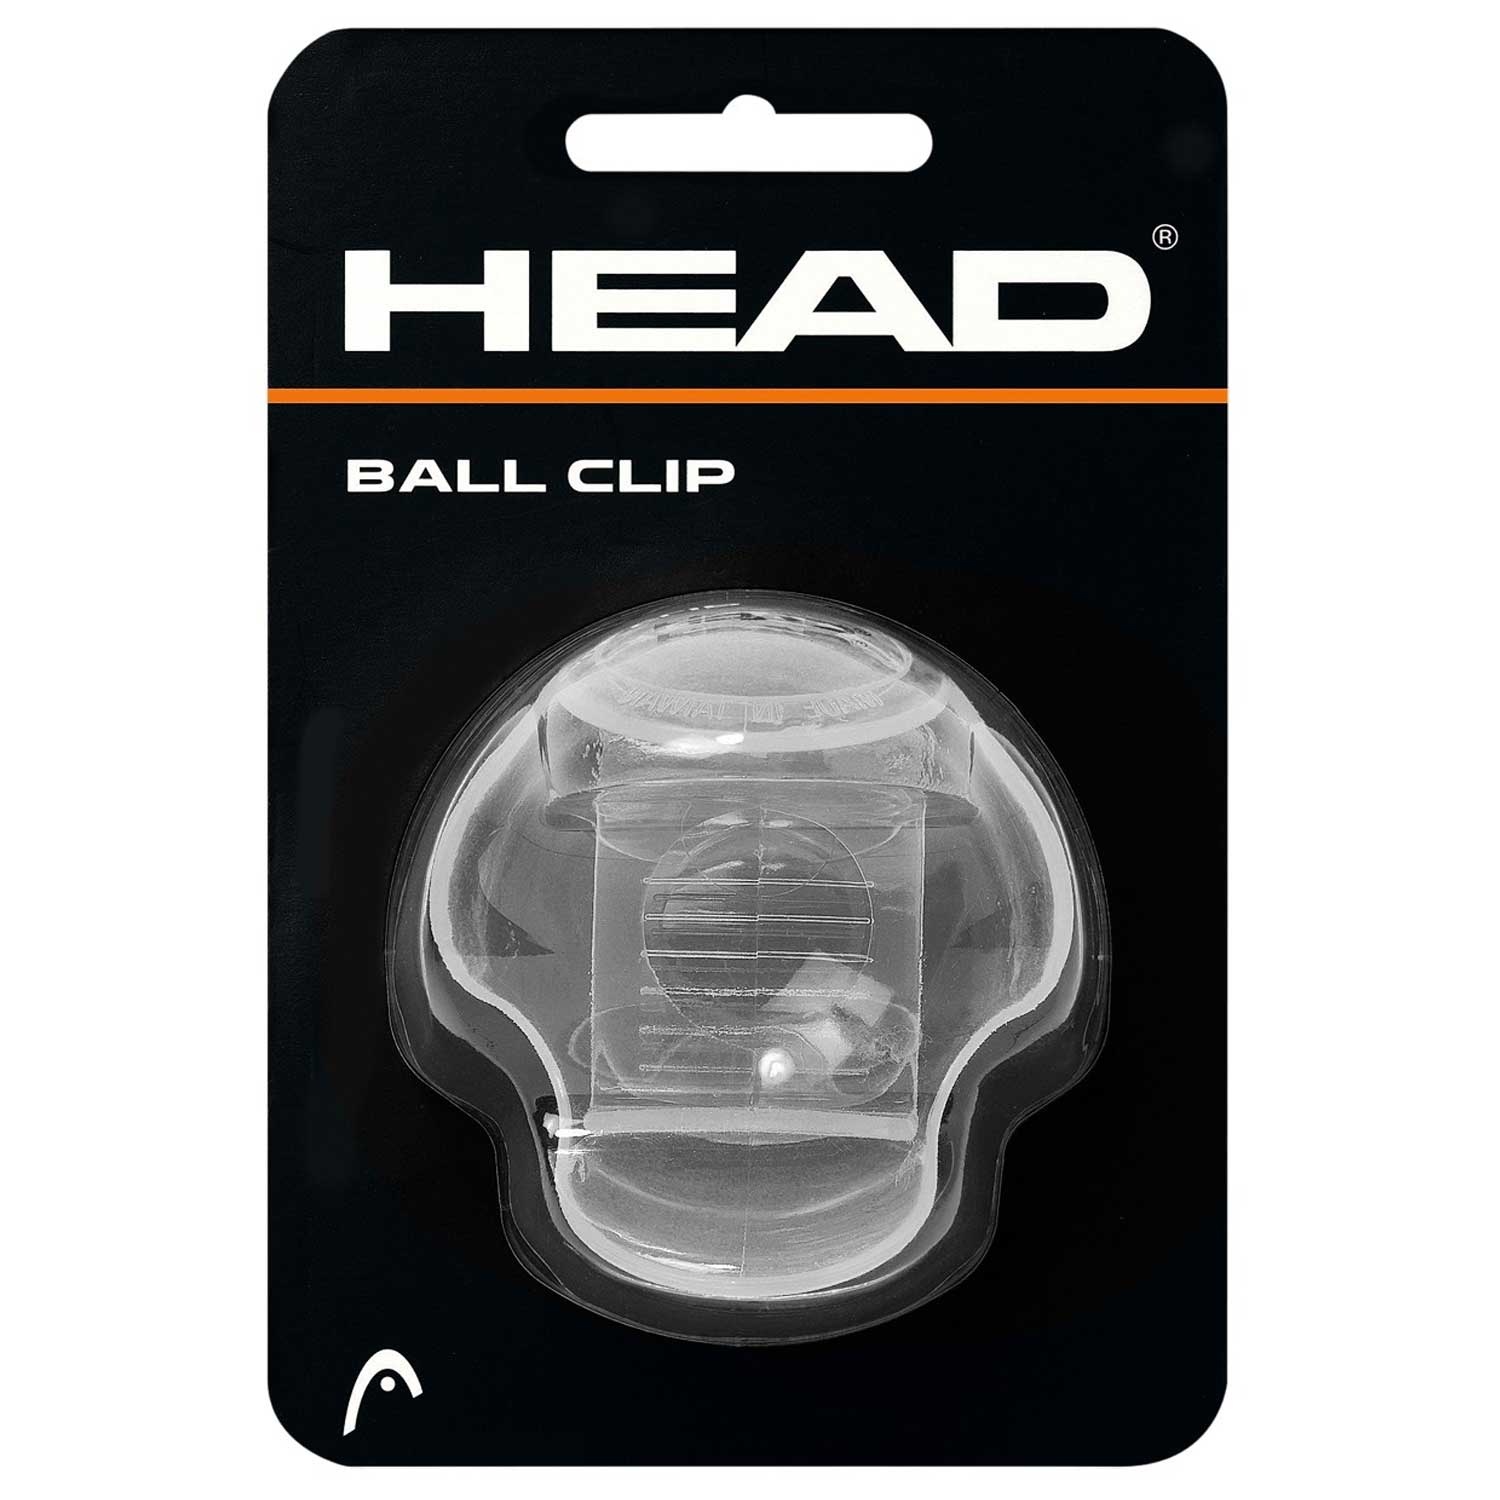 Head New Ball Clip Transparent